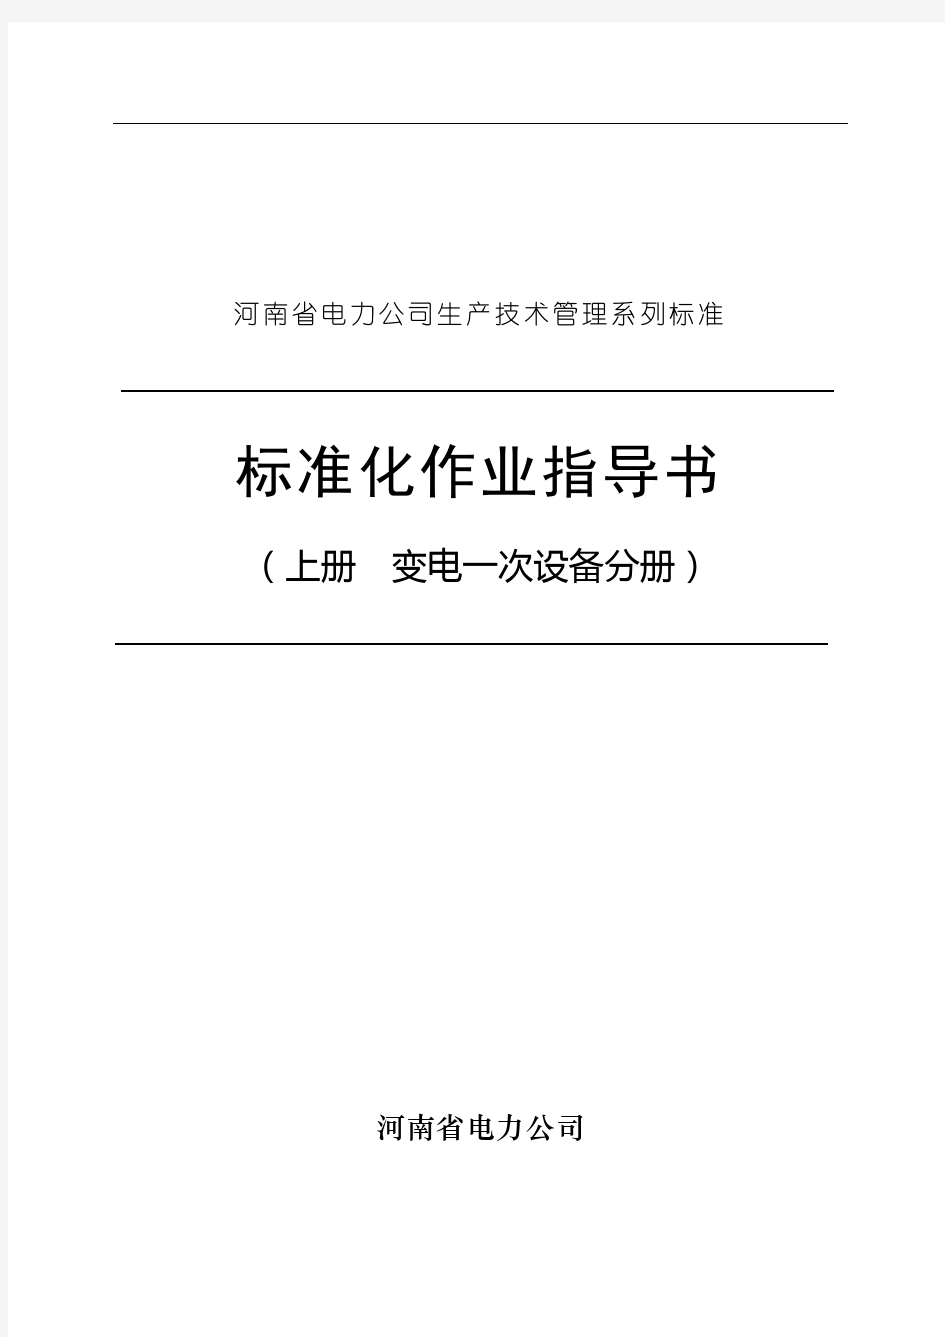 河南省电力公司标准化作业指导书(上册)--kaixin22122